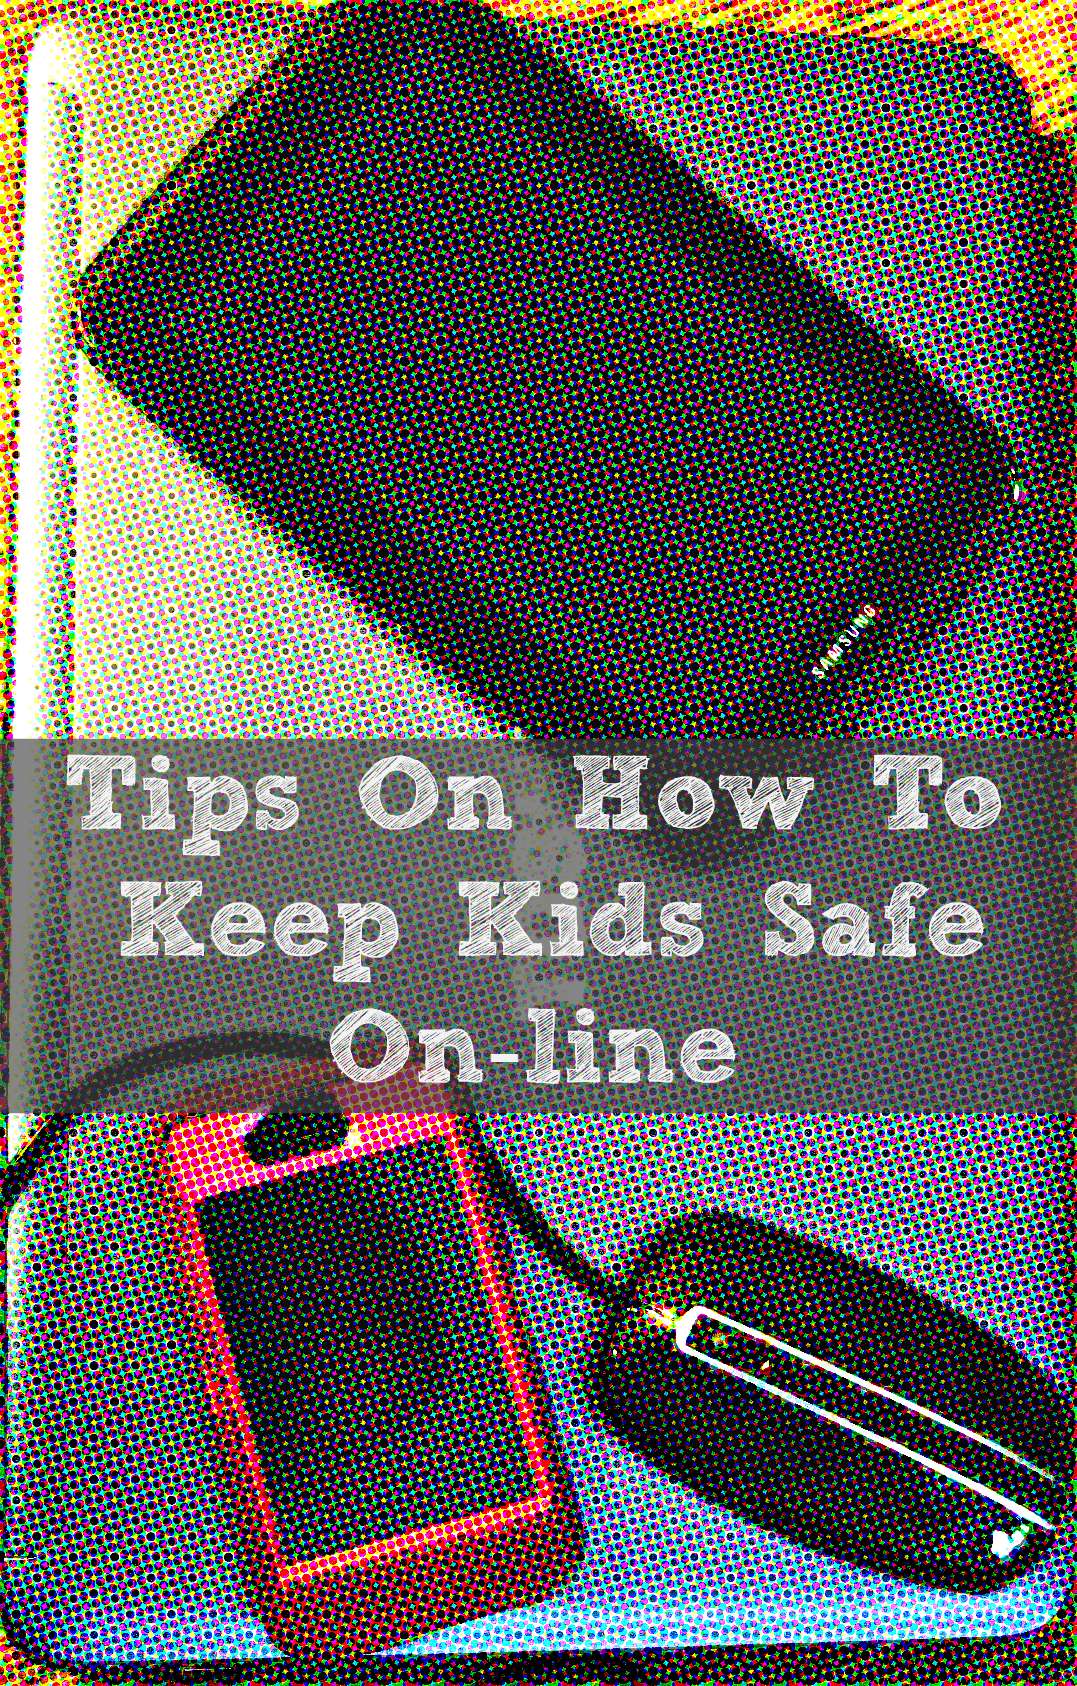 online safety, Keeping kids safe on-line, The Smart Talk, LifeLock, National PTA